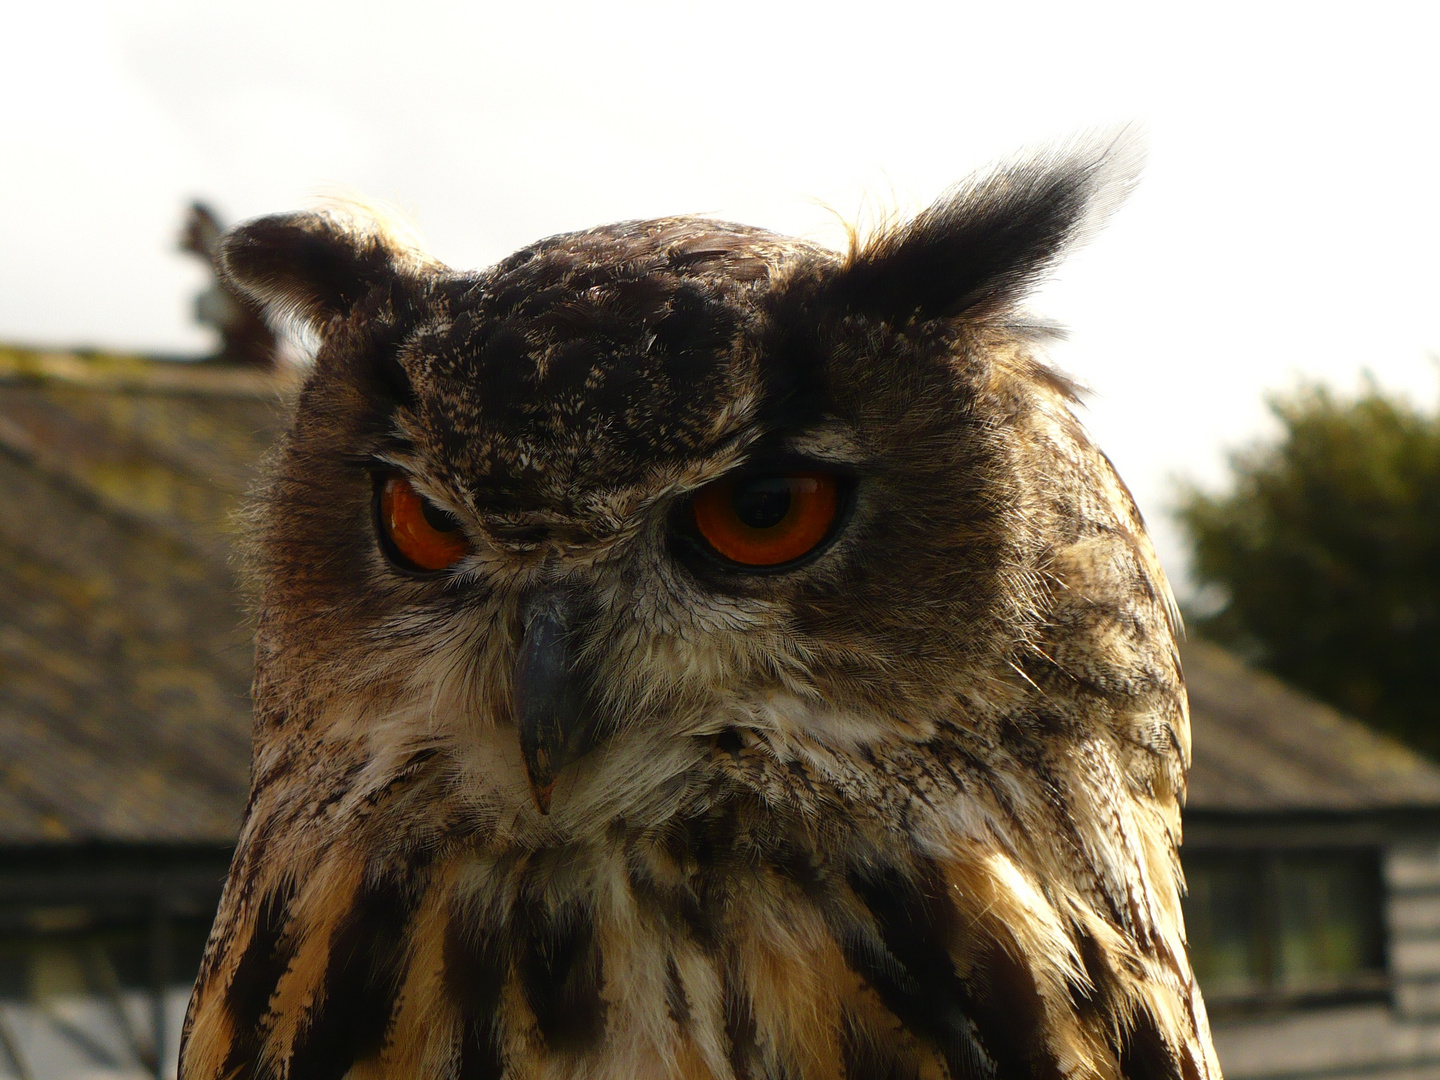 The Owl of Disdain